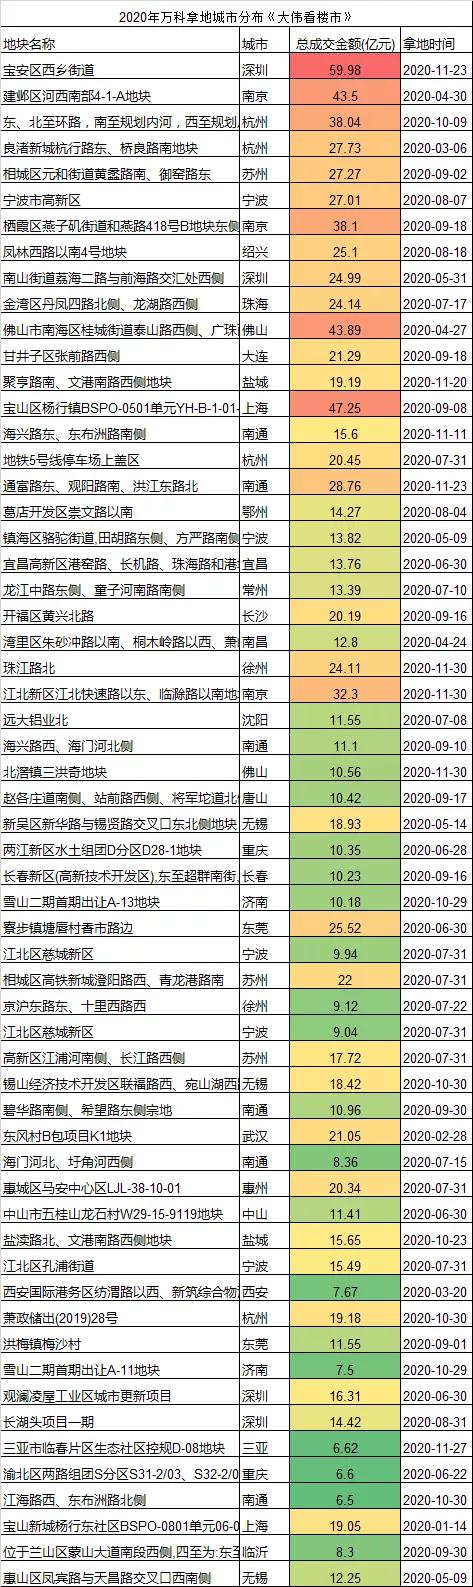 关于2021年中国房地产市场的33个预判